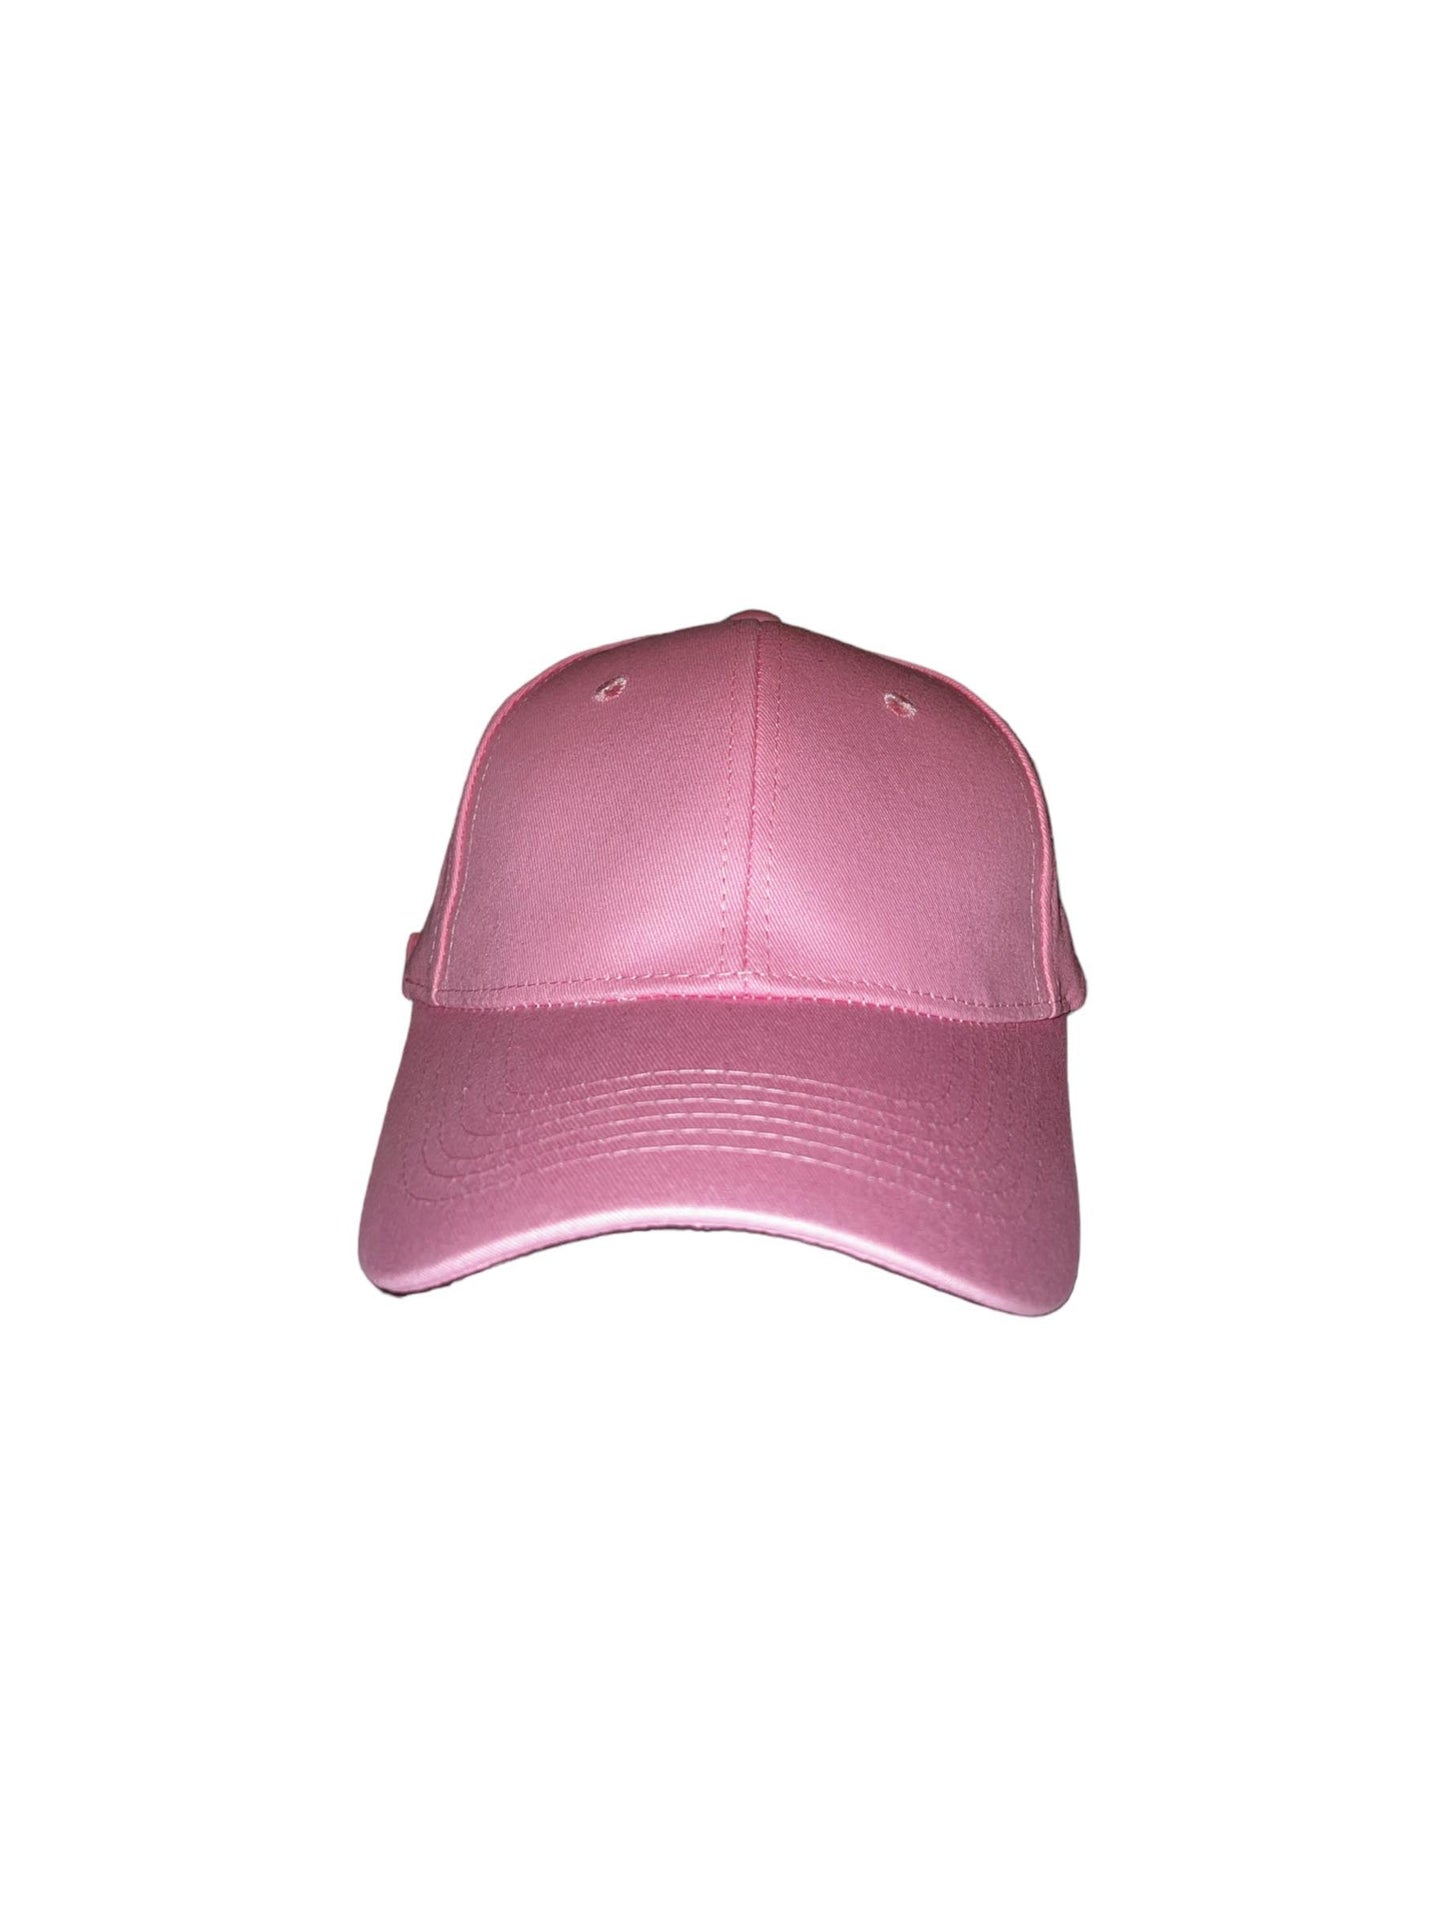 Wunderschöne rosa Mütze. Die Kappe kann auch mit Ihrem eigenen Aufdruck bestellt werden.